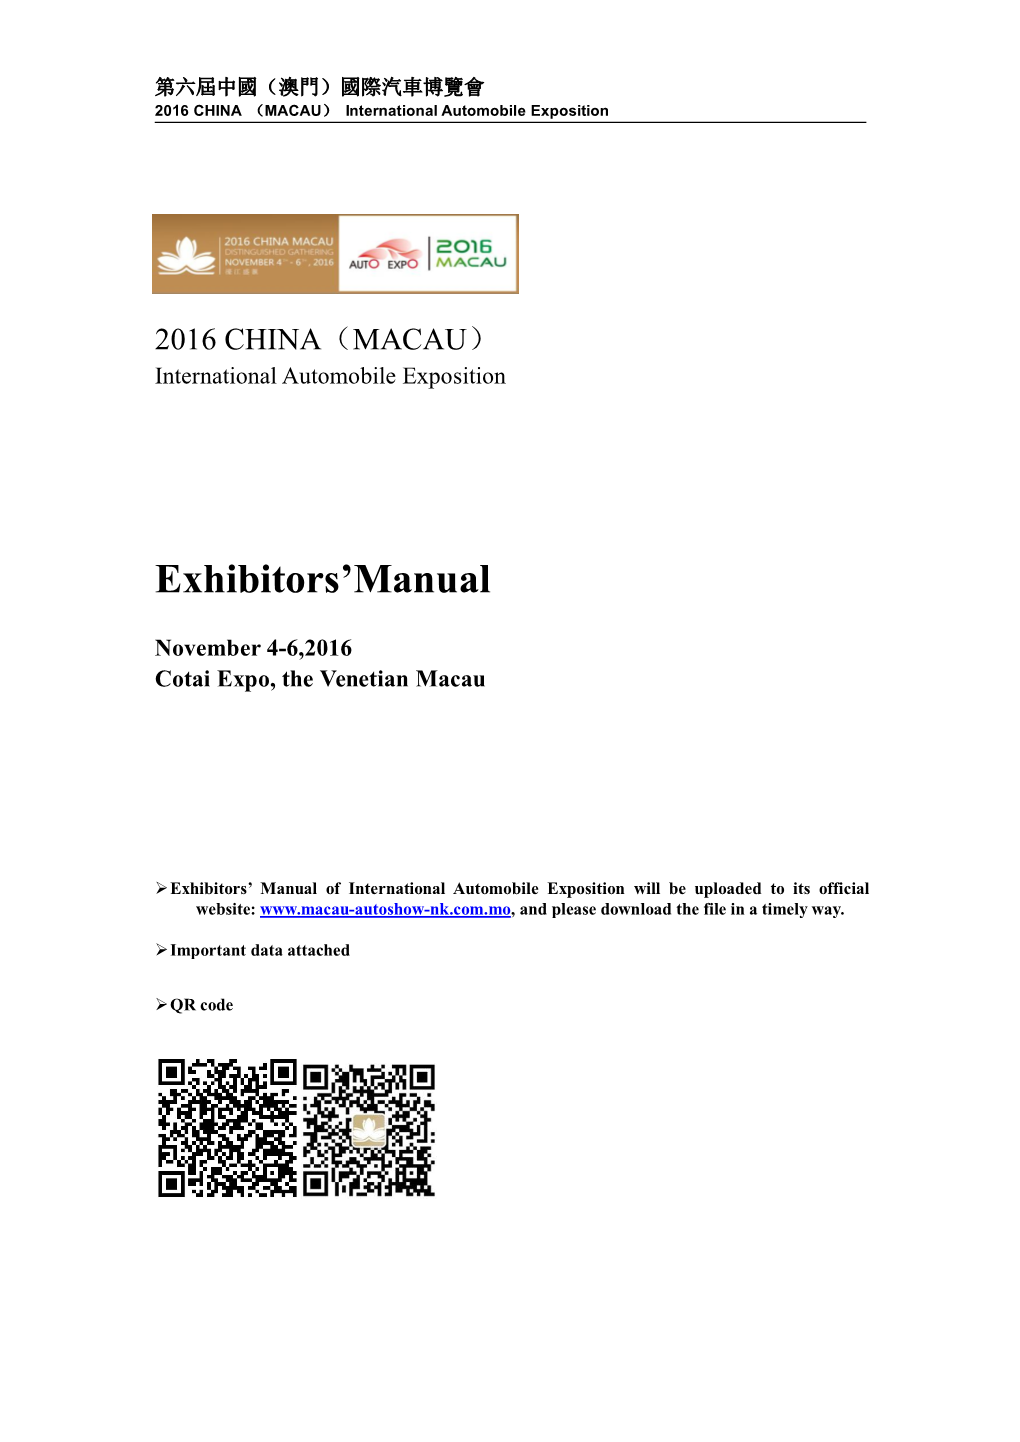 Exhibitors'manual